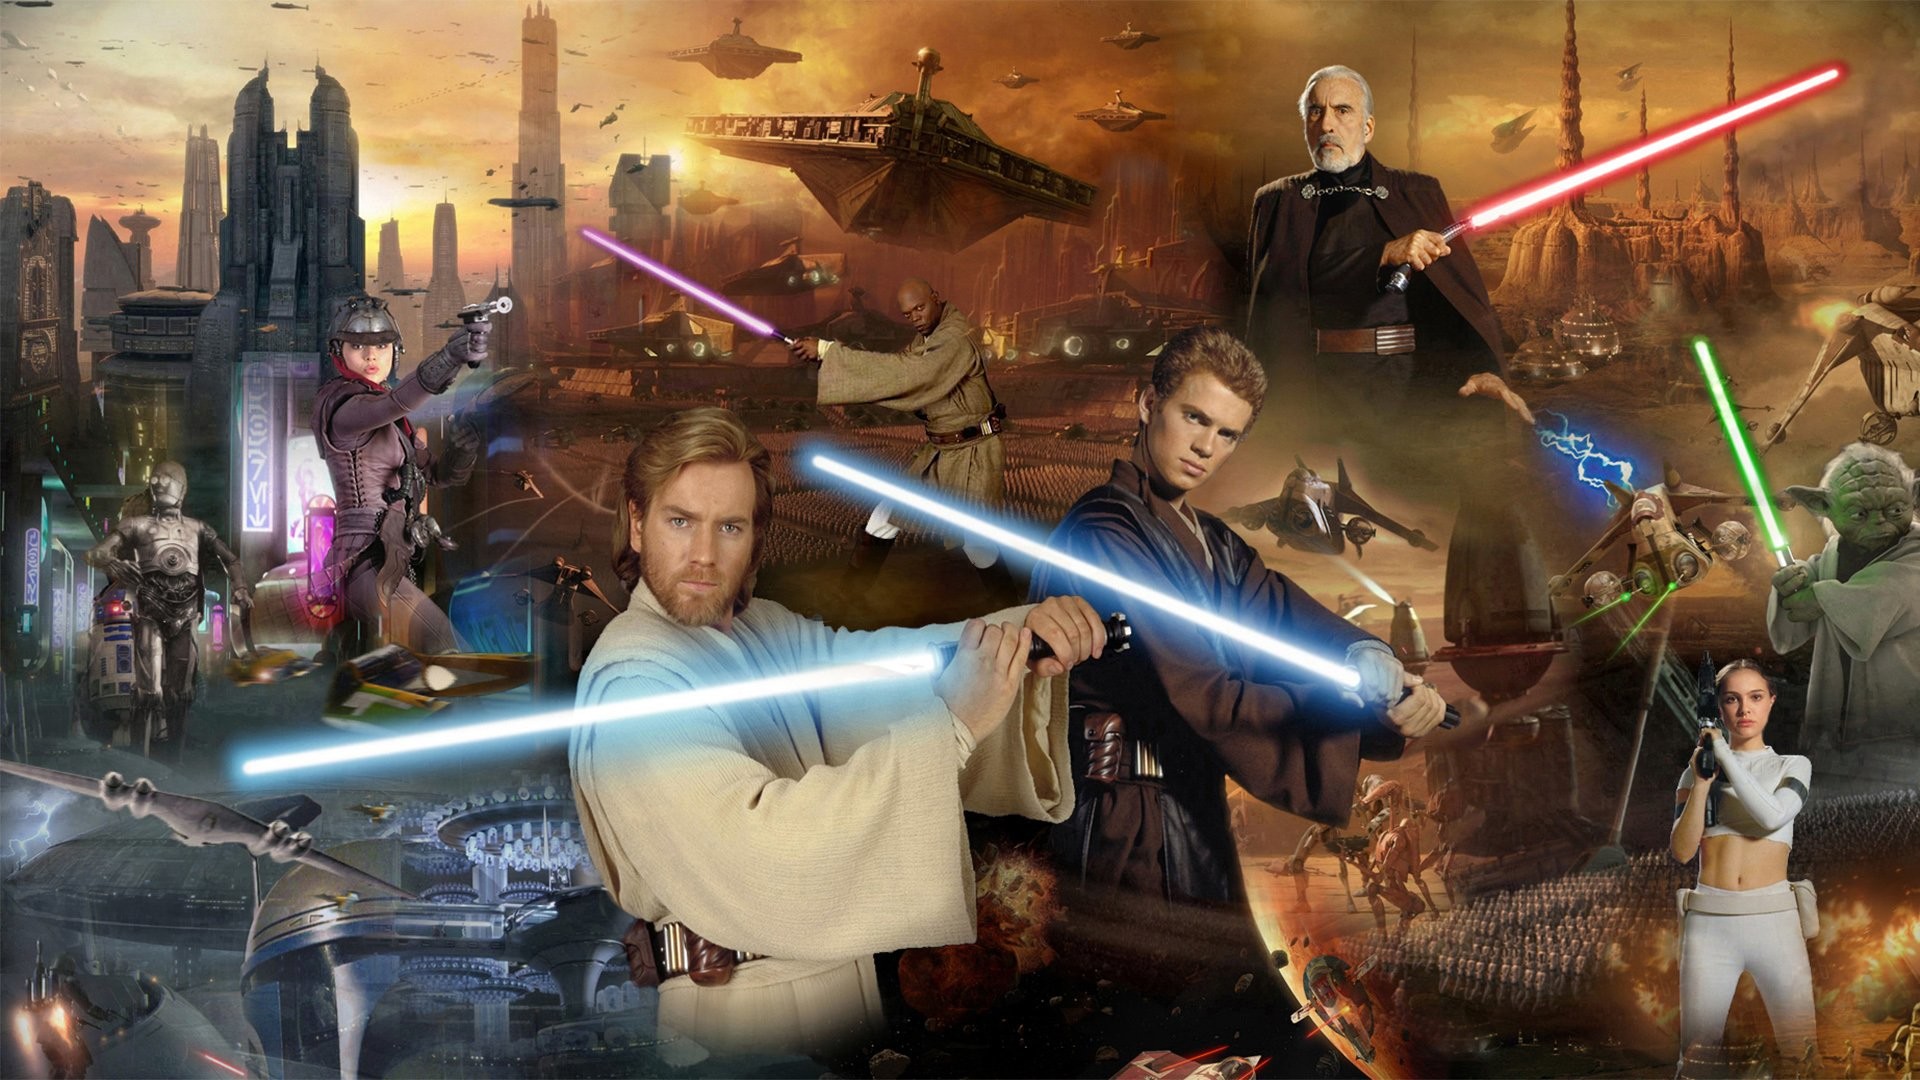 1920x1080 Movie - Star Wars Episode II: Attack Of The Clones Yoda Anakin Skywalker  Ewan McGregor